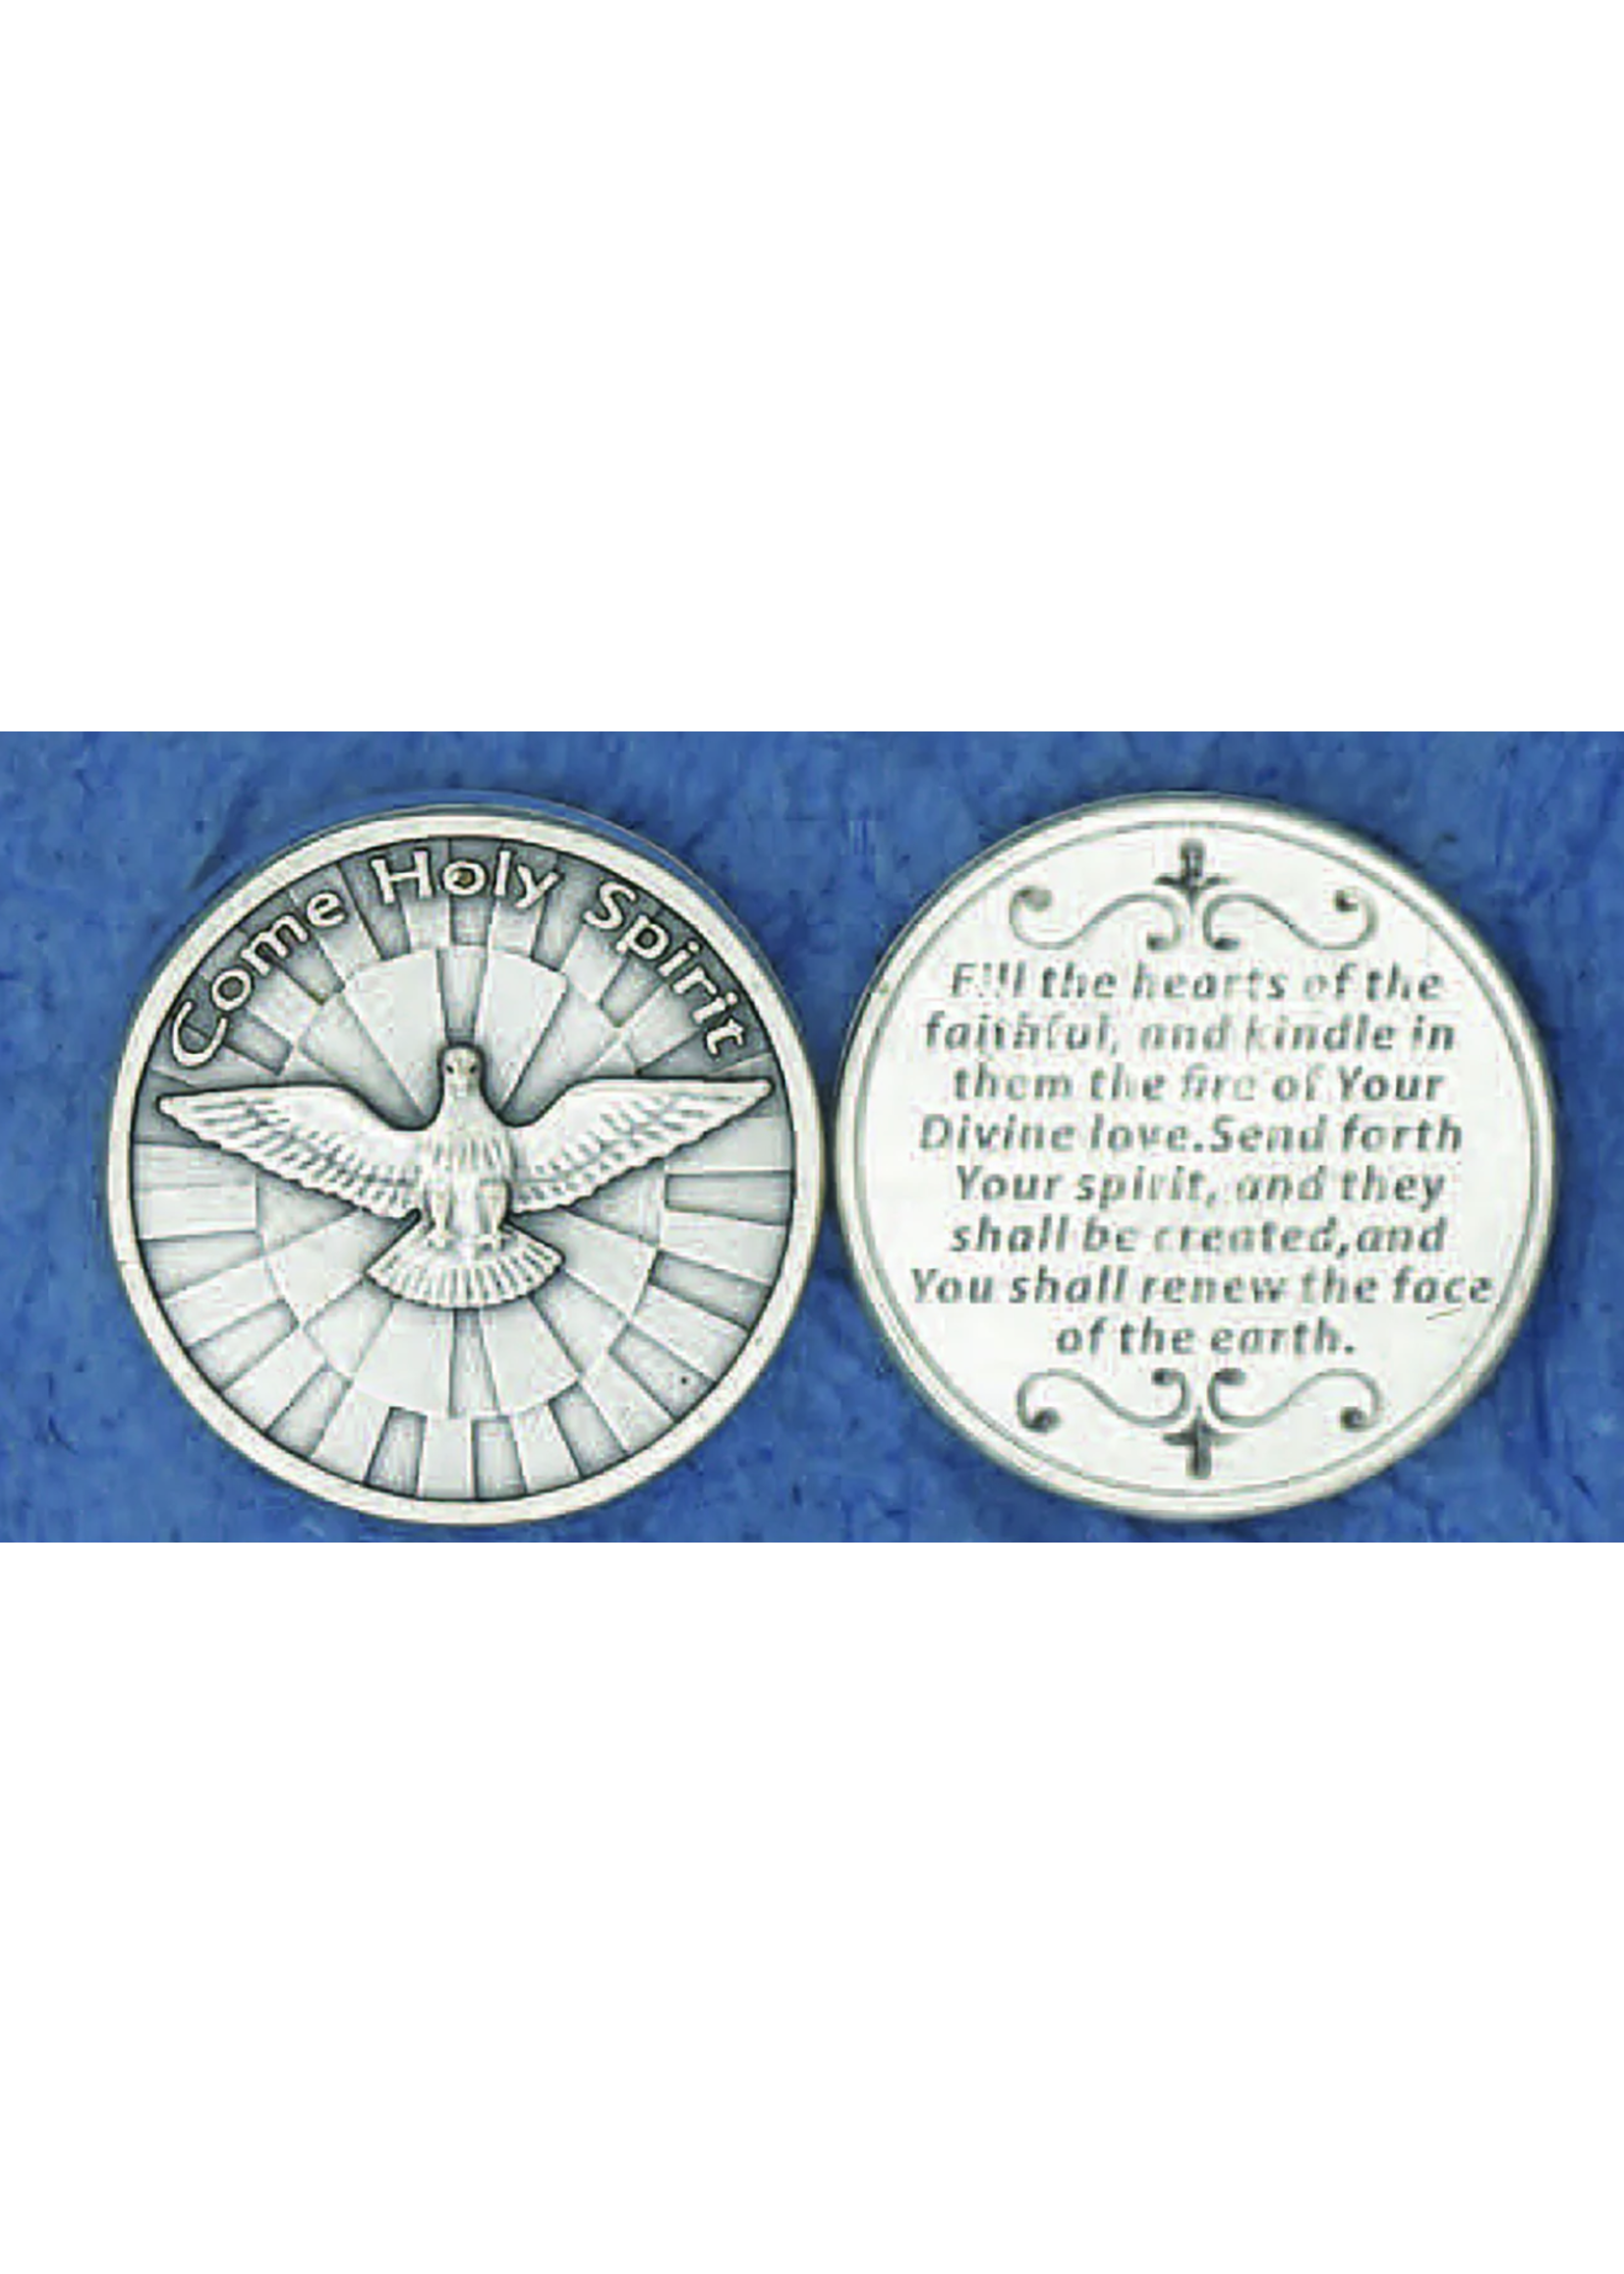 Come Holy Spirit pocket prayer token/coin